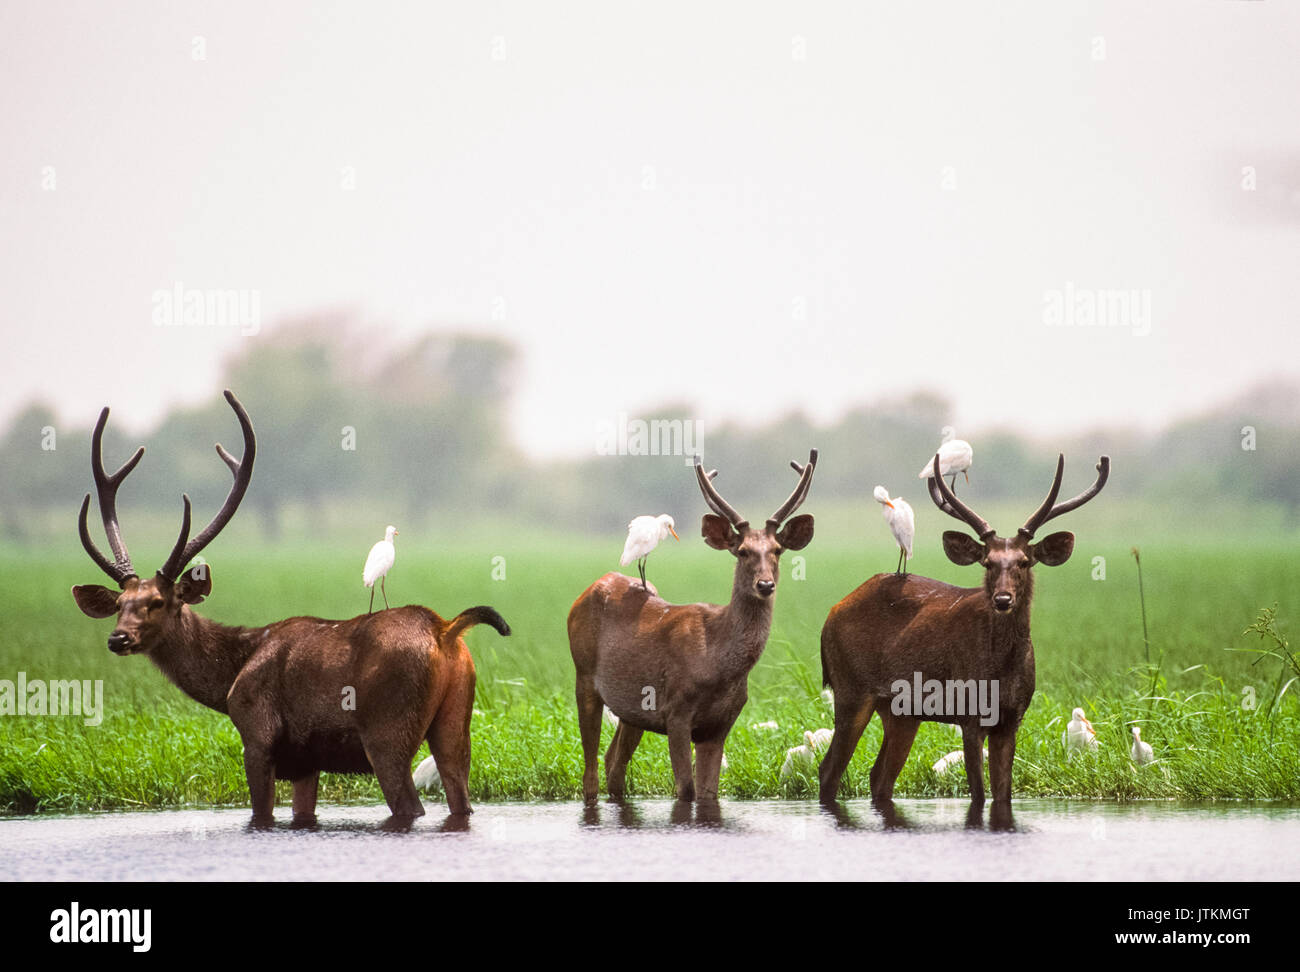 Männliche Sambar Hirsche, Rusa unicolor, in Feuchtgebiet Lebensraum, Keoladeo Ghana National Park, Bharatpur, Rajasthan, Indien Stockfoto